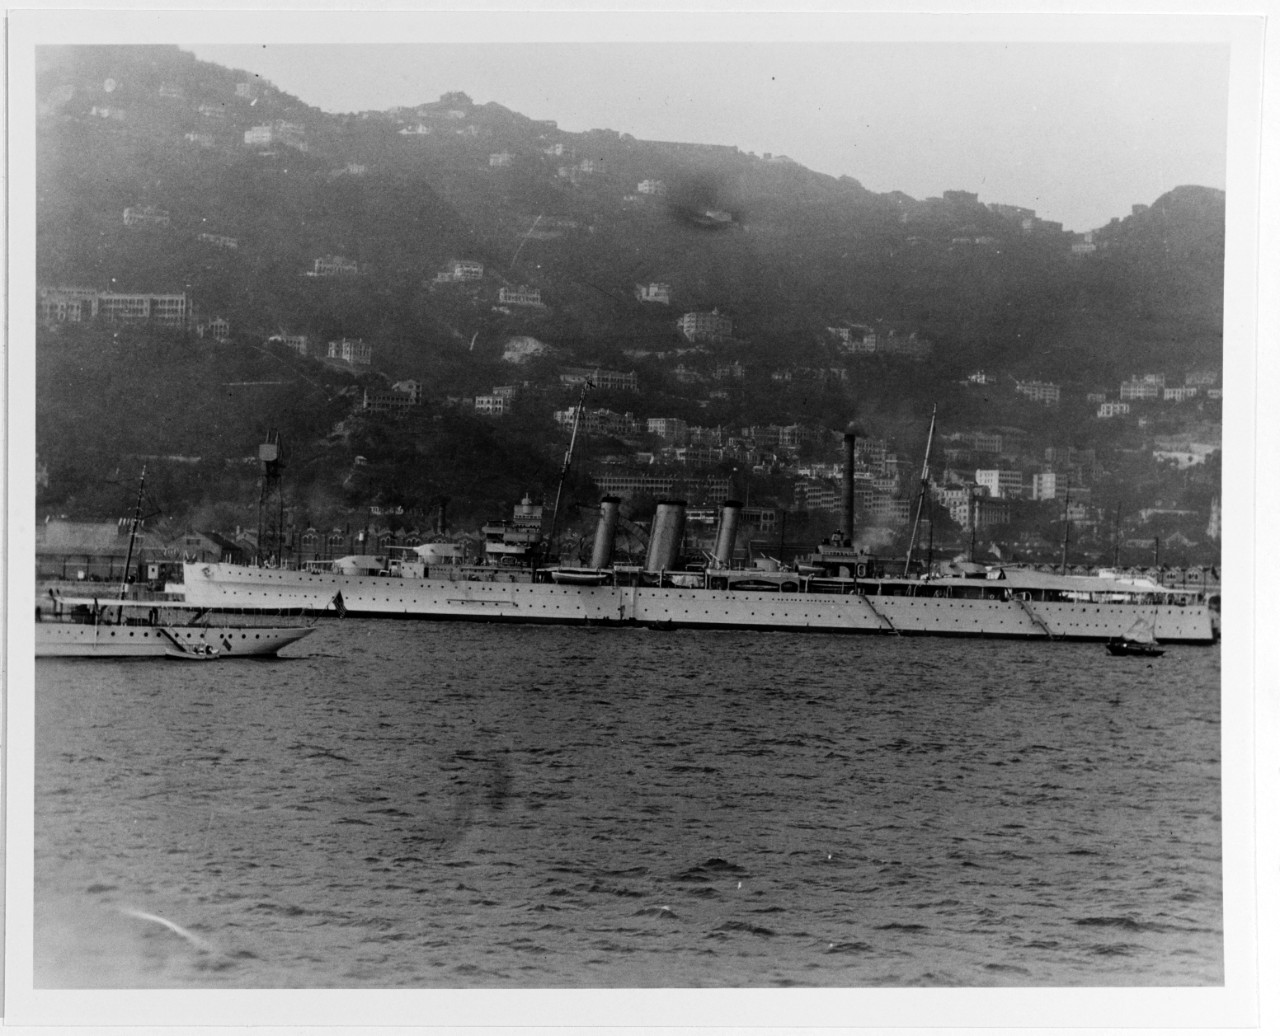 SUFFOLK (British heavy cruiser, 1926-1948)